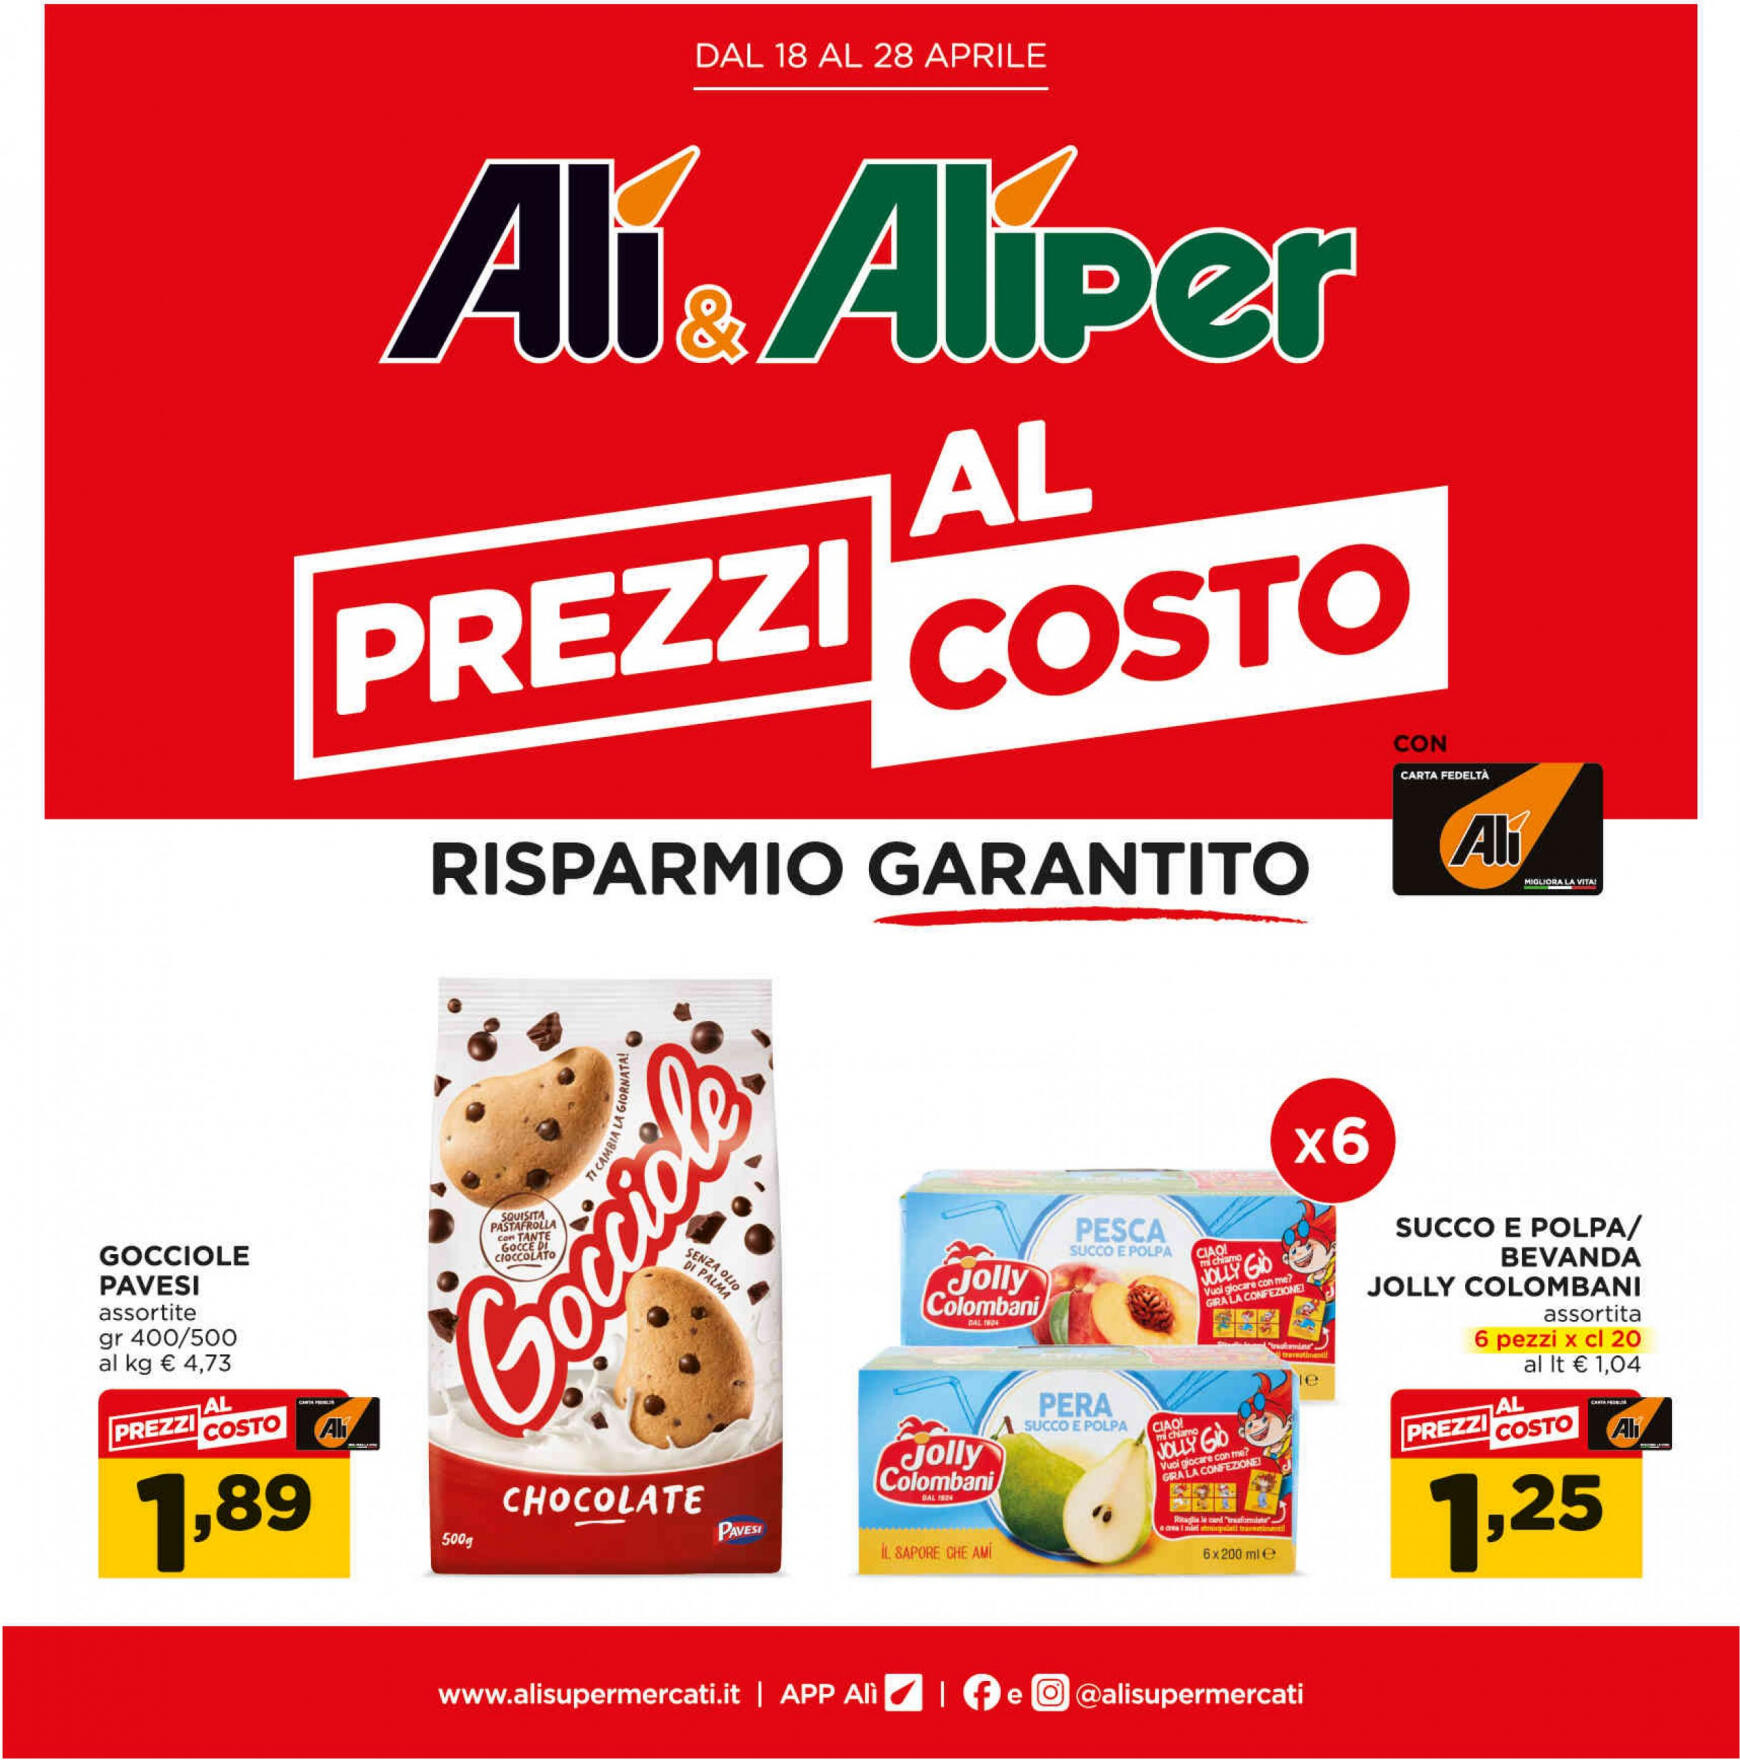 ali-aliper - Nuovo volantino Ali - Aliper - Prezzi al costo 18.04. - 28.04. - page: 1